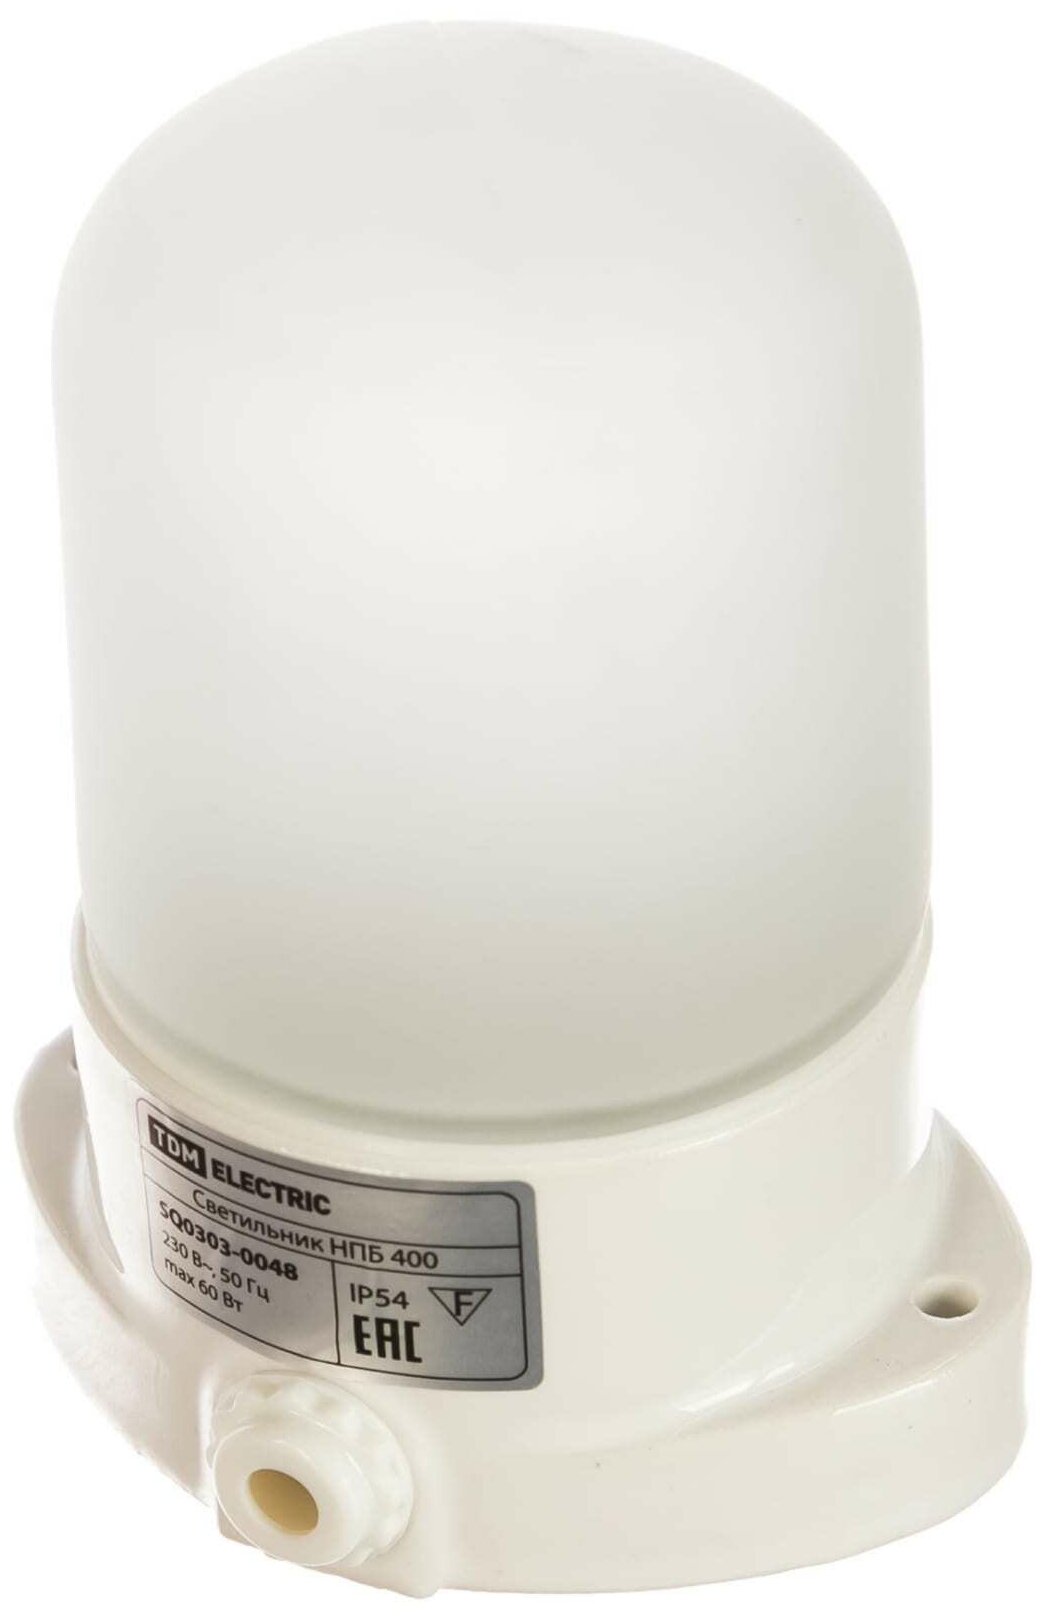 Светильник НПБ400 для сауны настенный, IP54, 60 ВТ, белый, TDM - фотография № 1